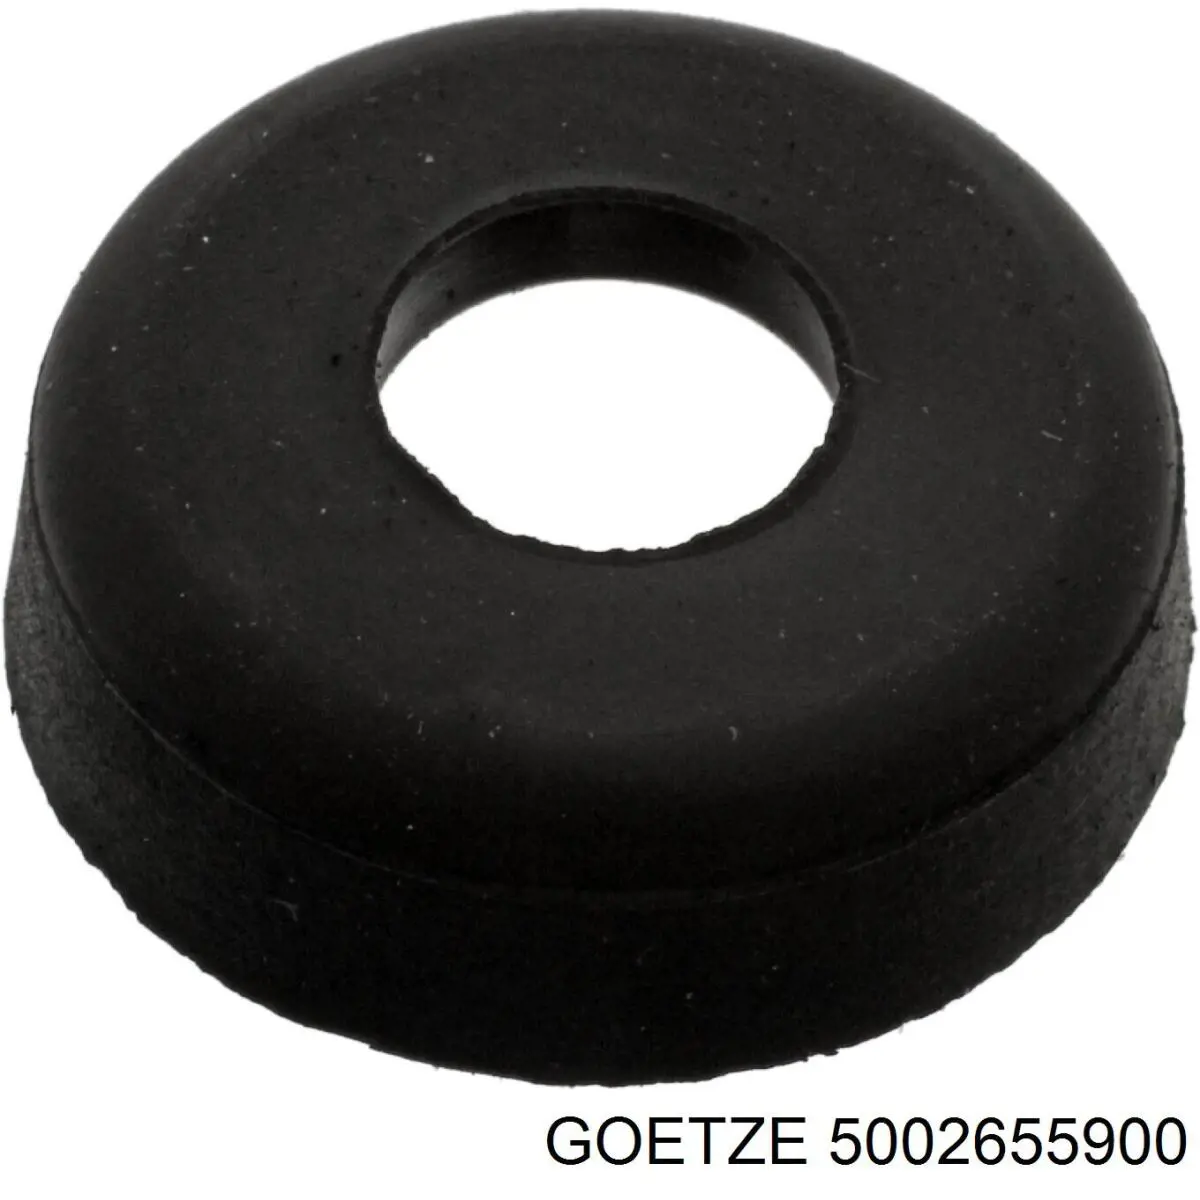 5002655900 Goetze прокладка клапанной крышки двигателя, кольцо